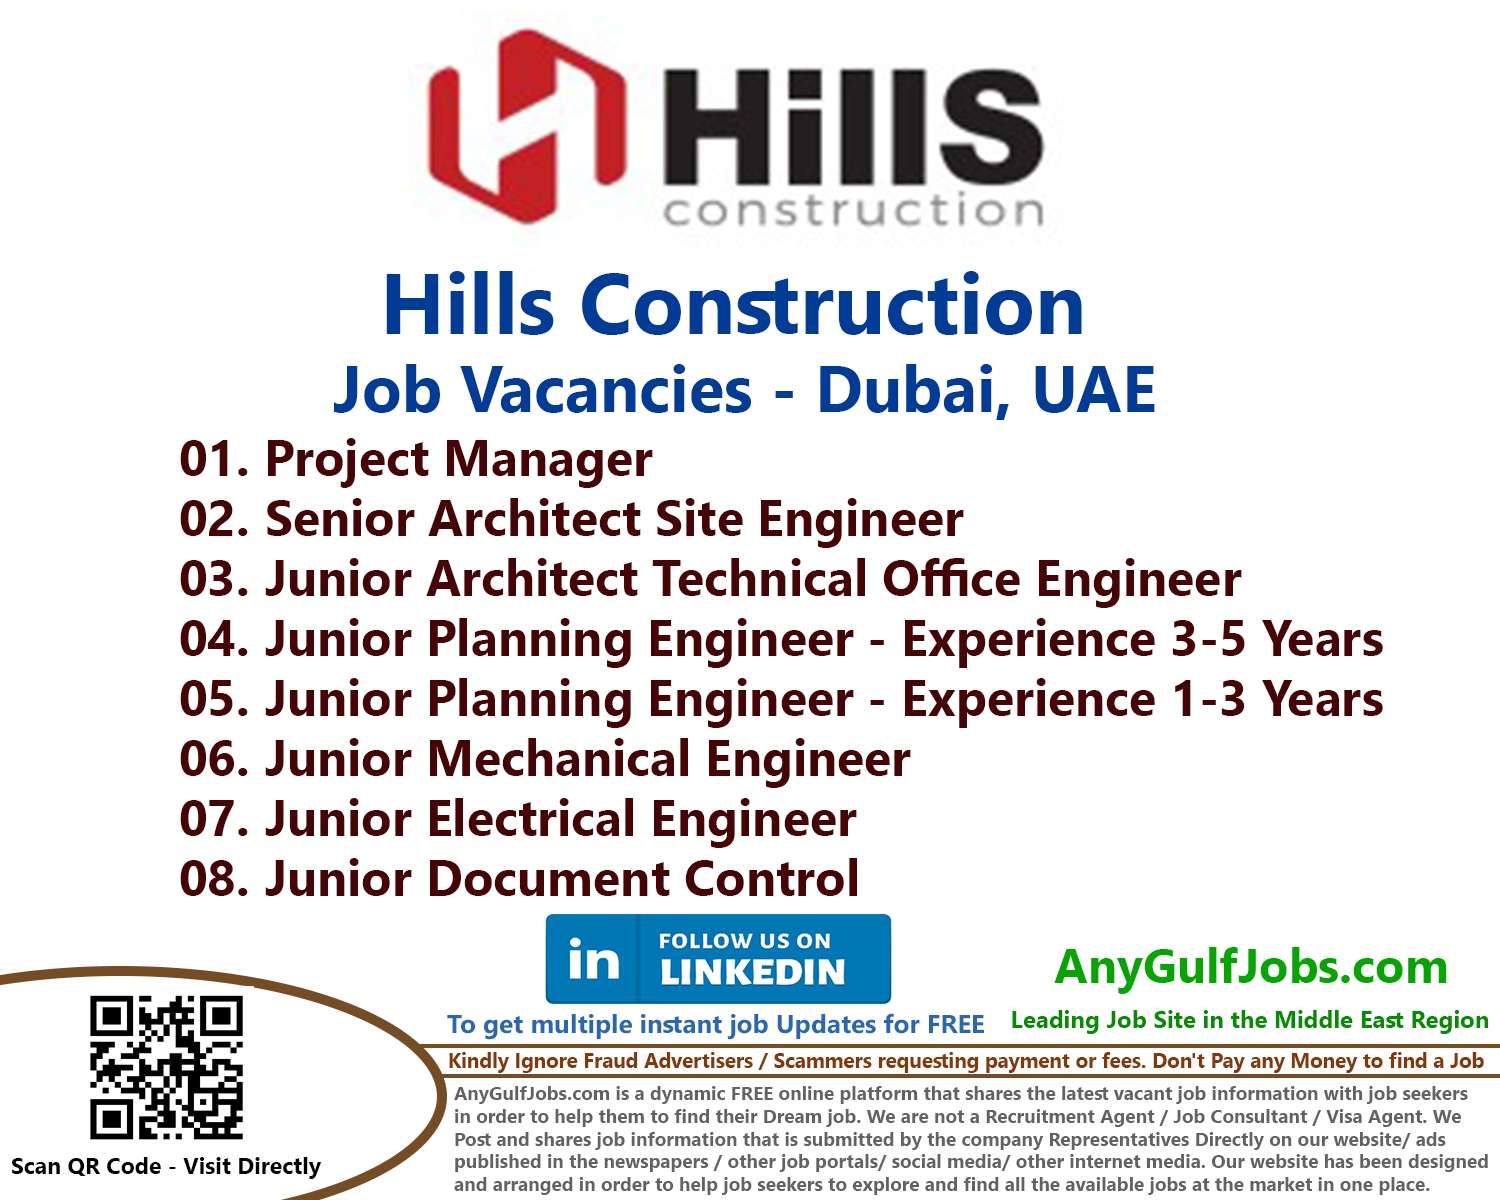 Hills Construction Job Vacancies - Dubai, UAE